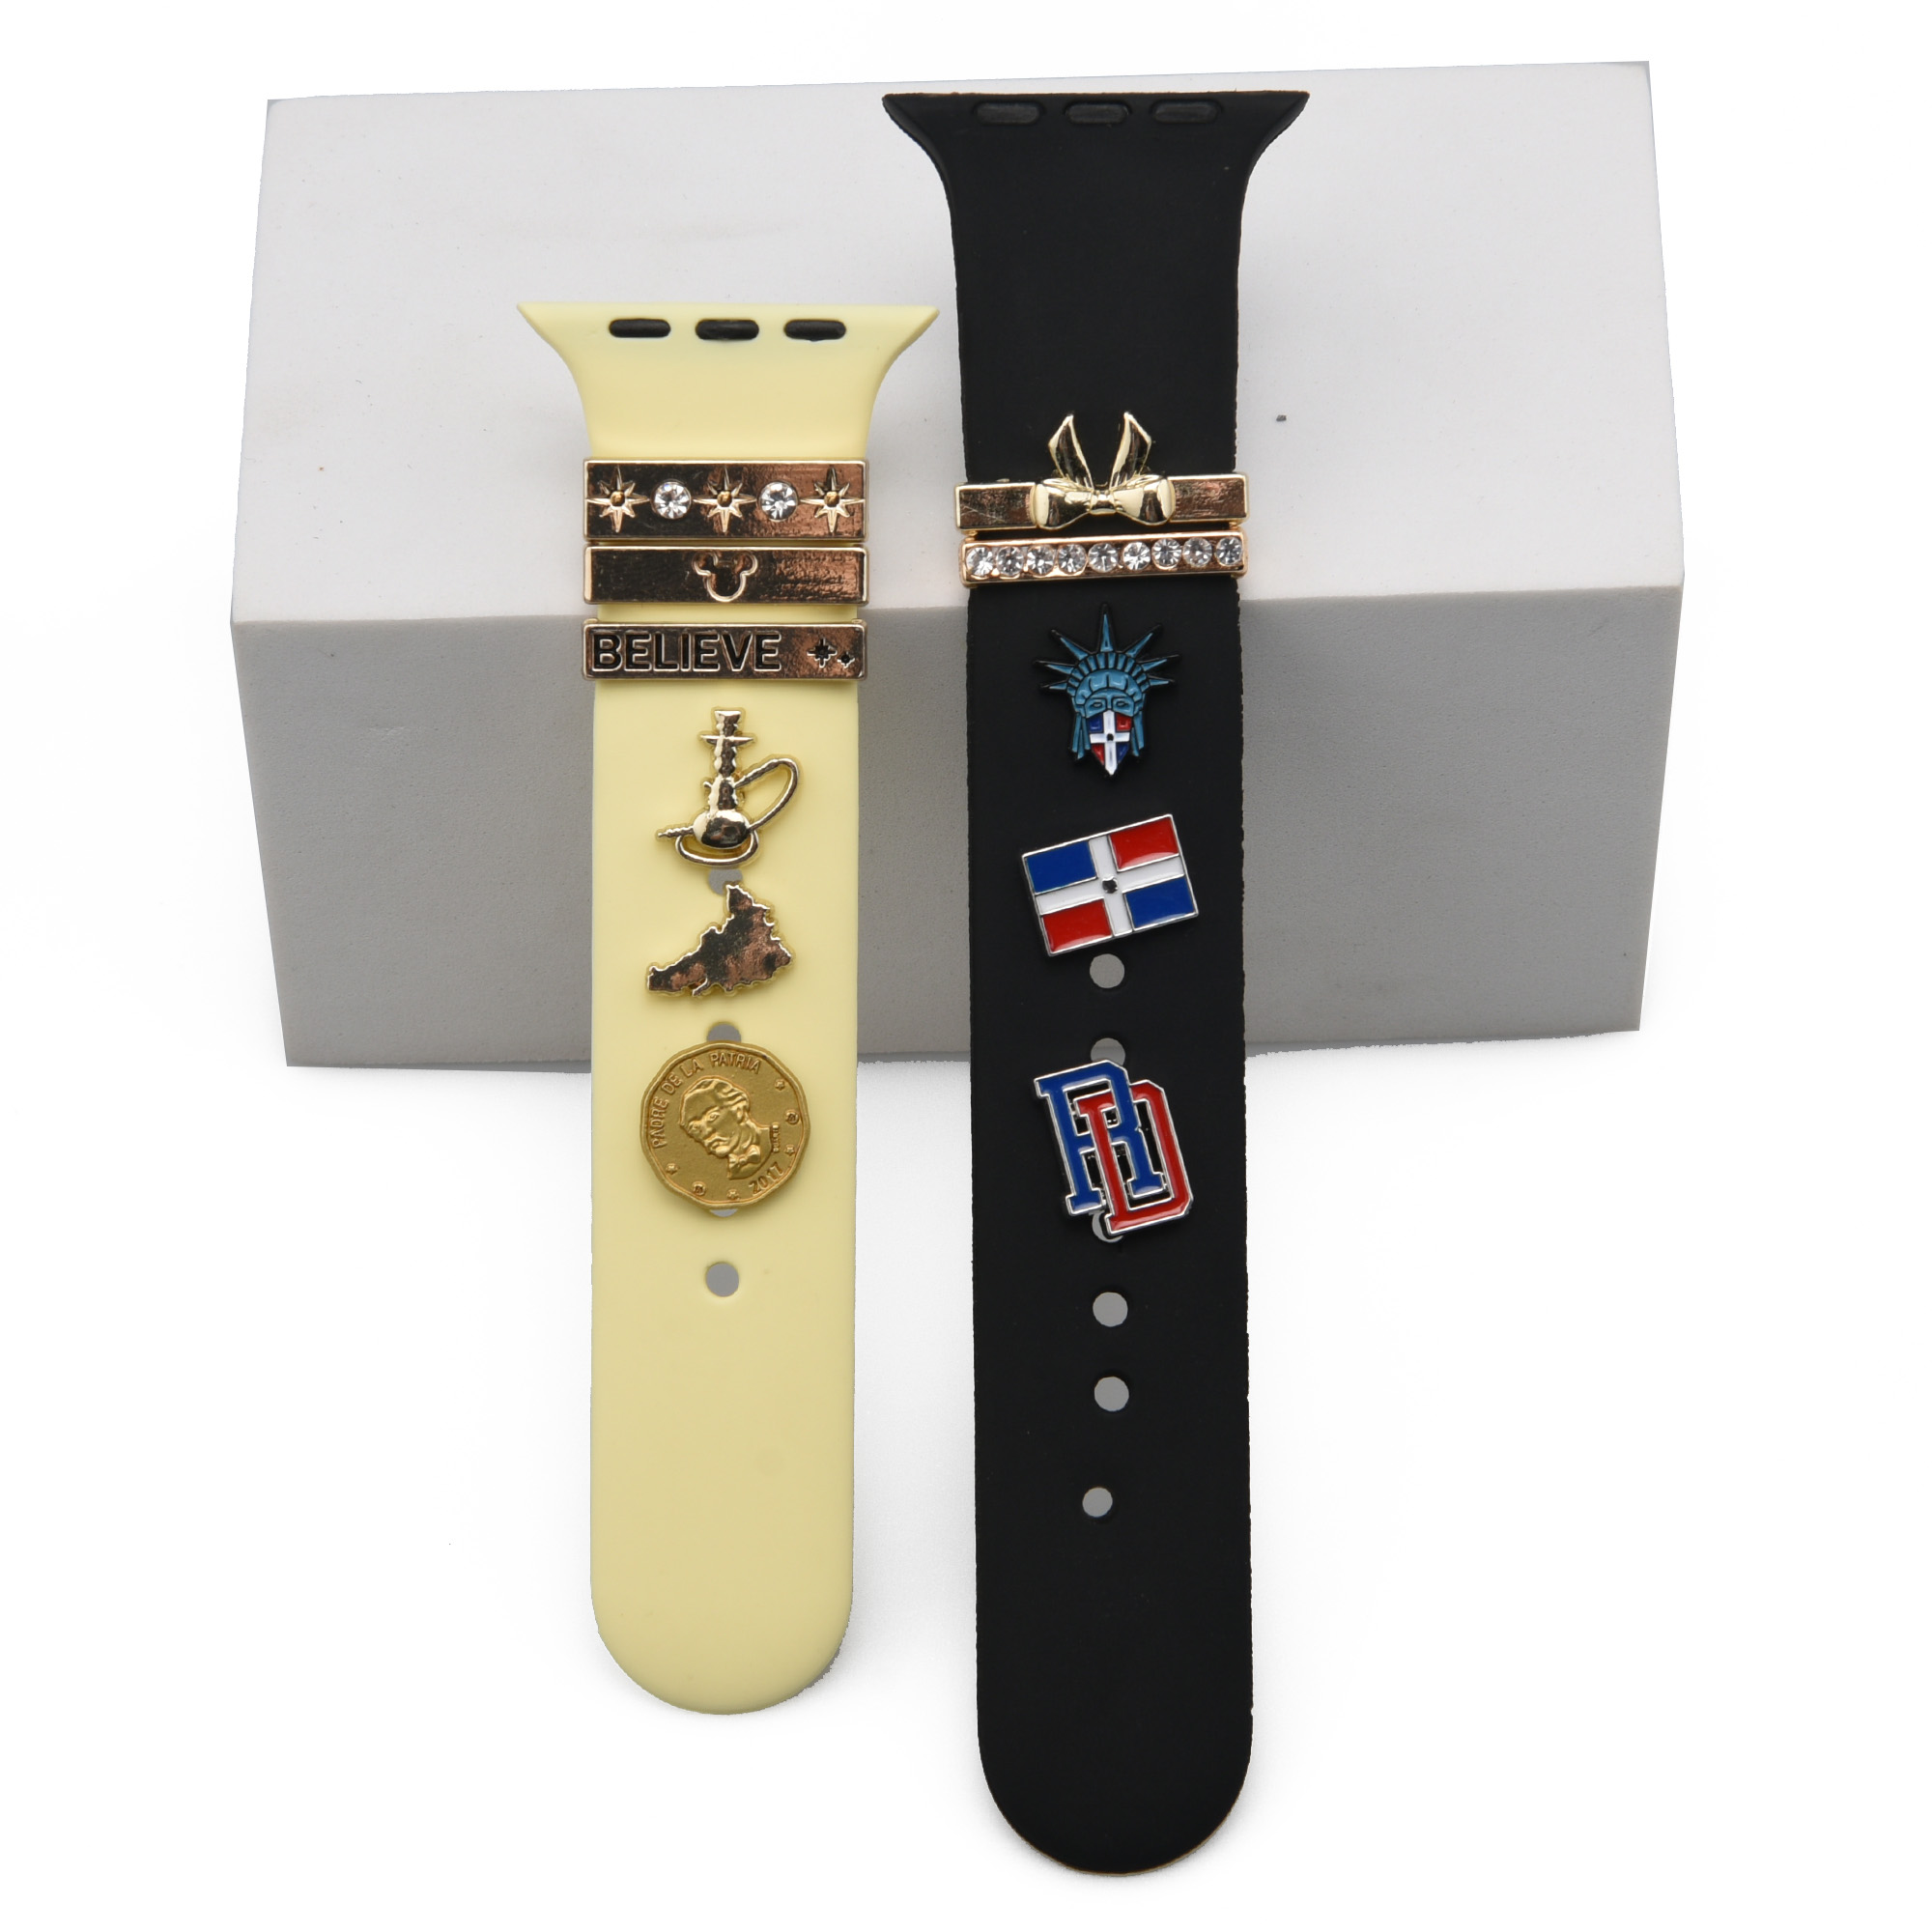 Bad bunny Apples Band Charms Recién llegado Apple Watch Decorativos Charm para BandsBracelet Metal Leg Decorativo para reloj Correa deportiva Adorno